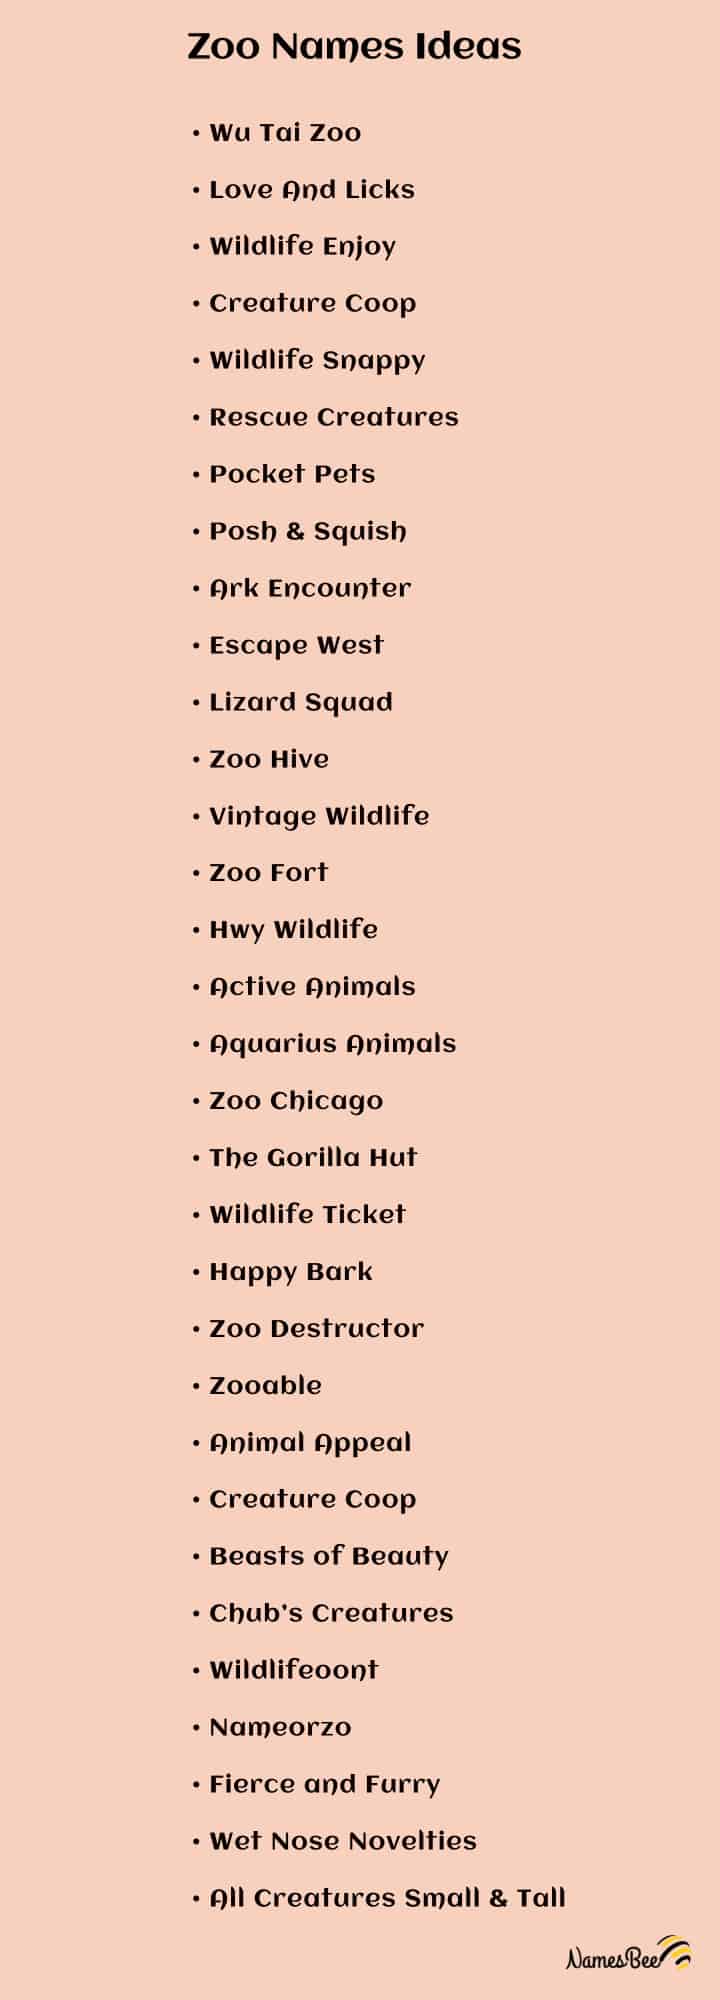 unique zoo names ideas